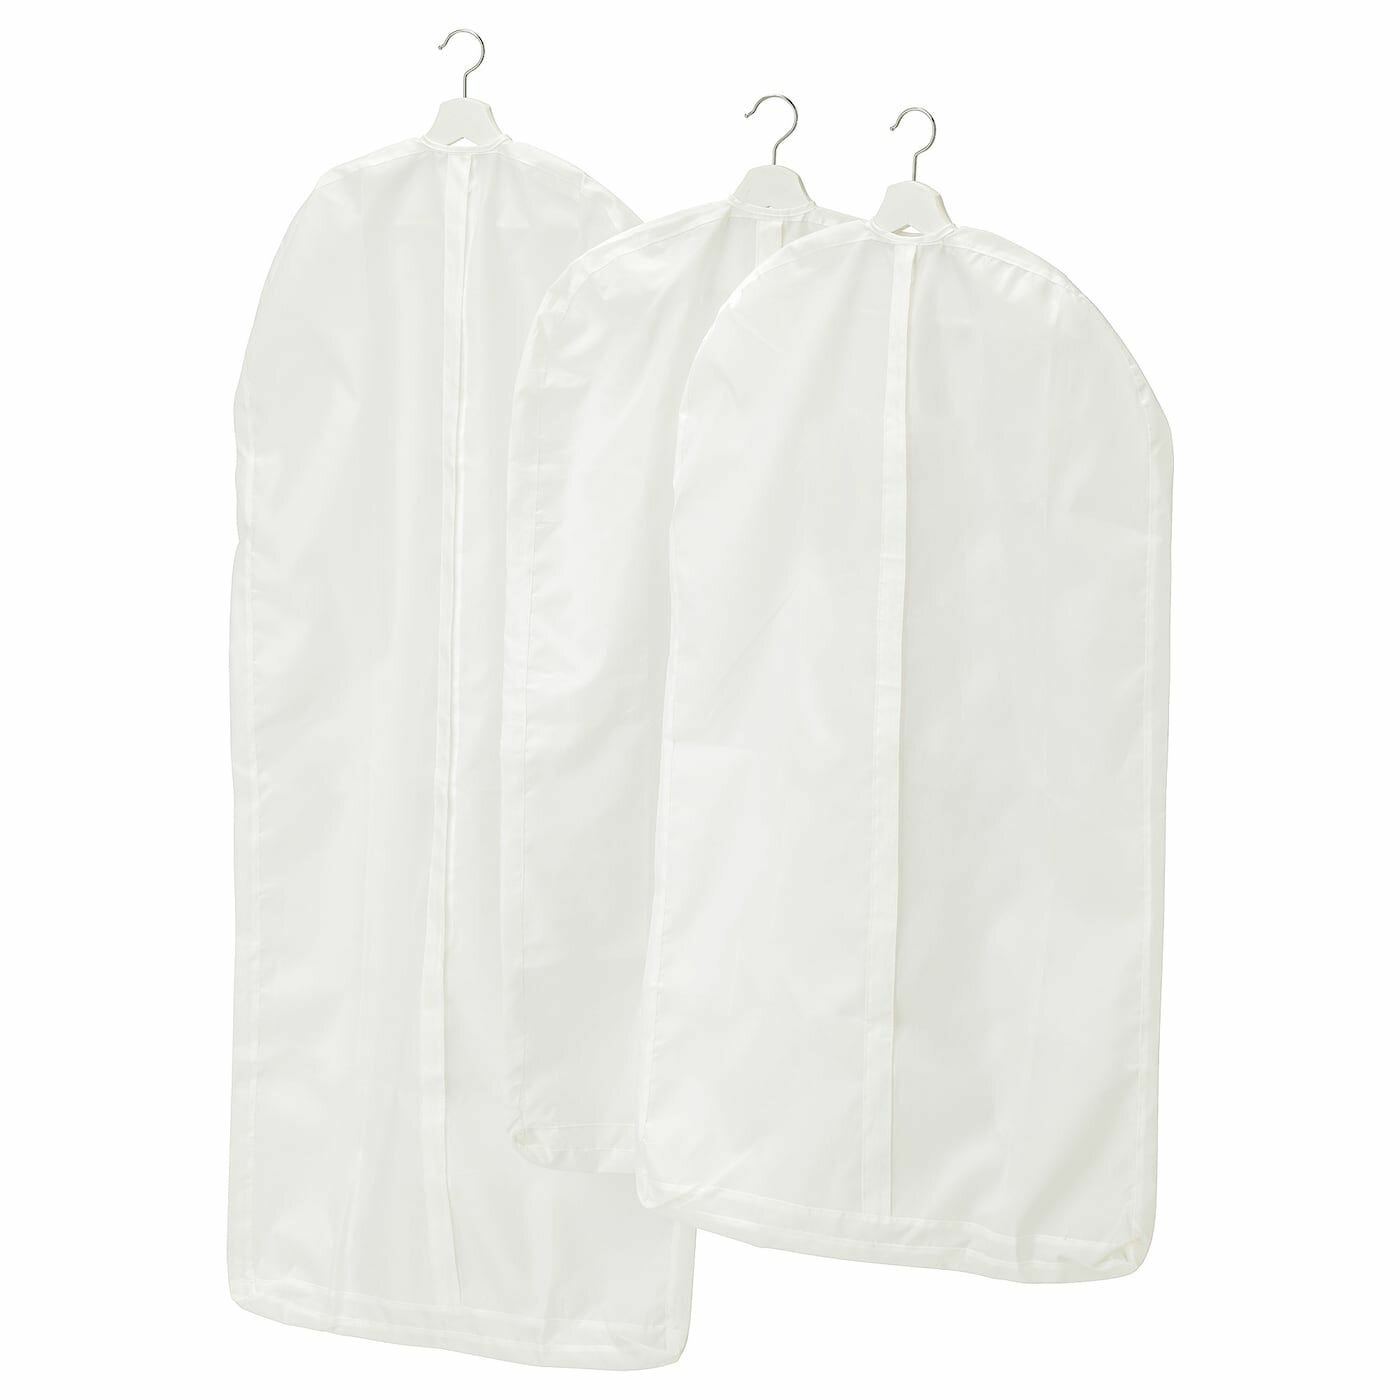 SKUBB Чехол для одежды IKEA, белый/3 штуки (90388940)